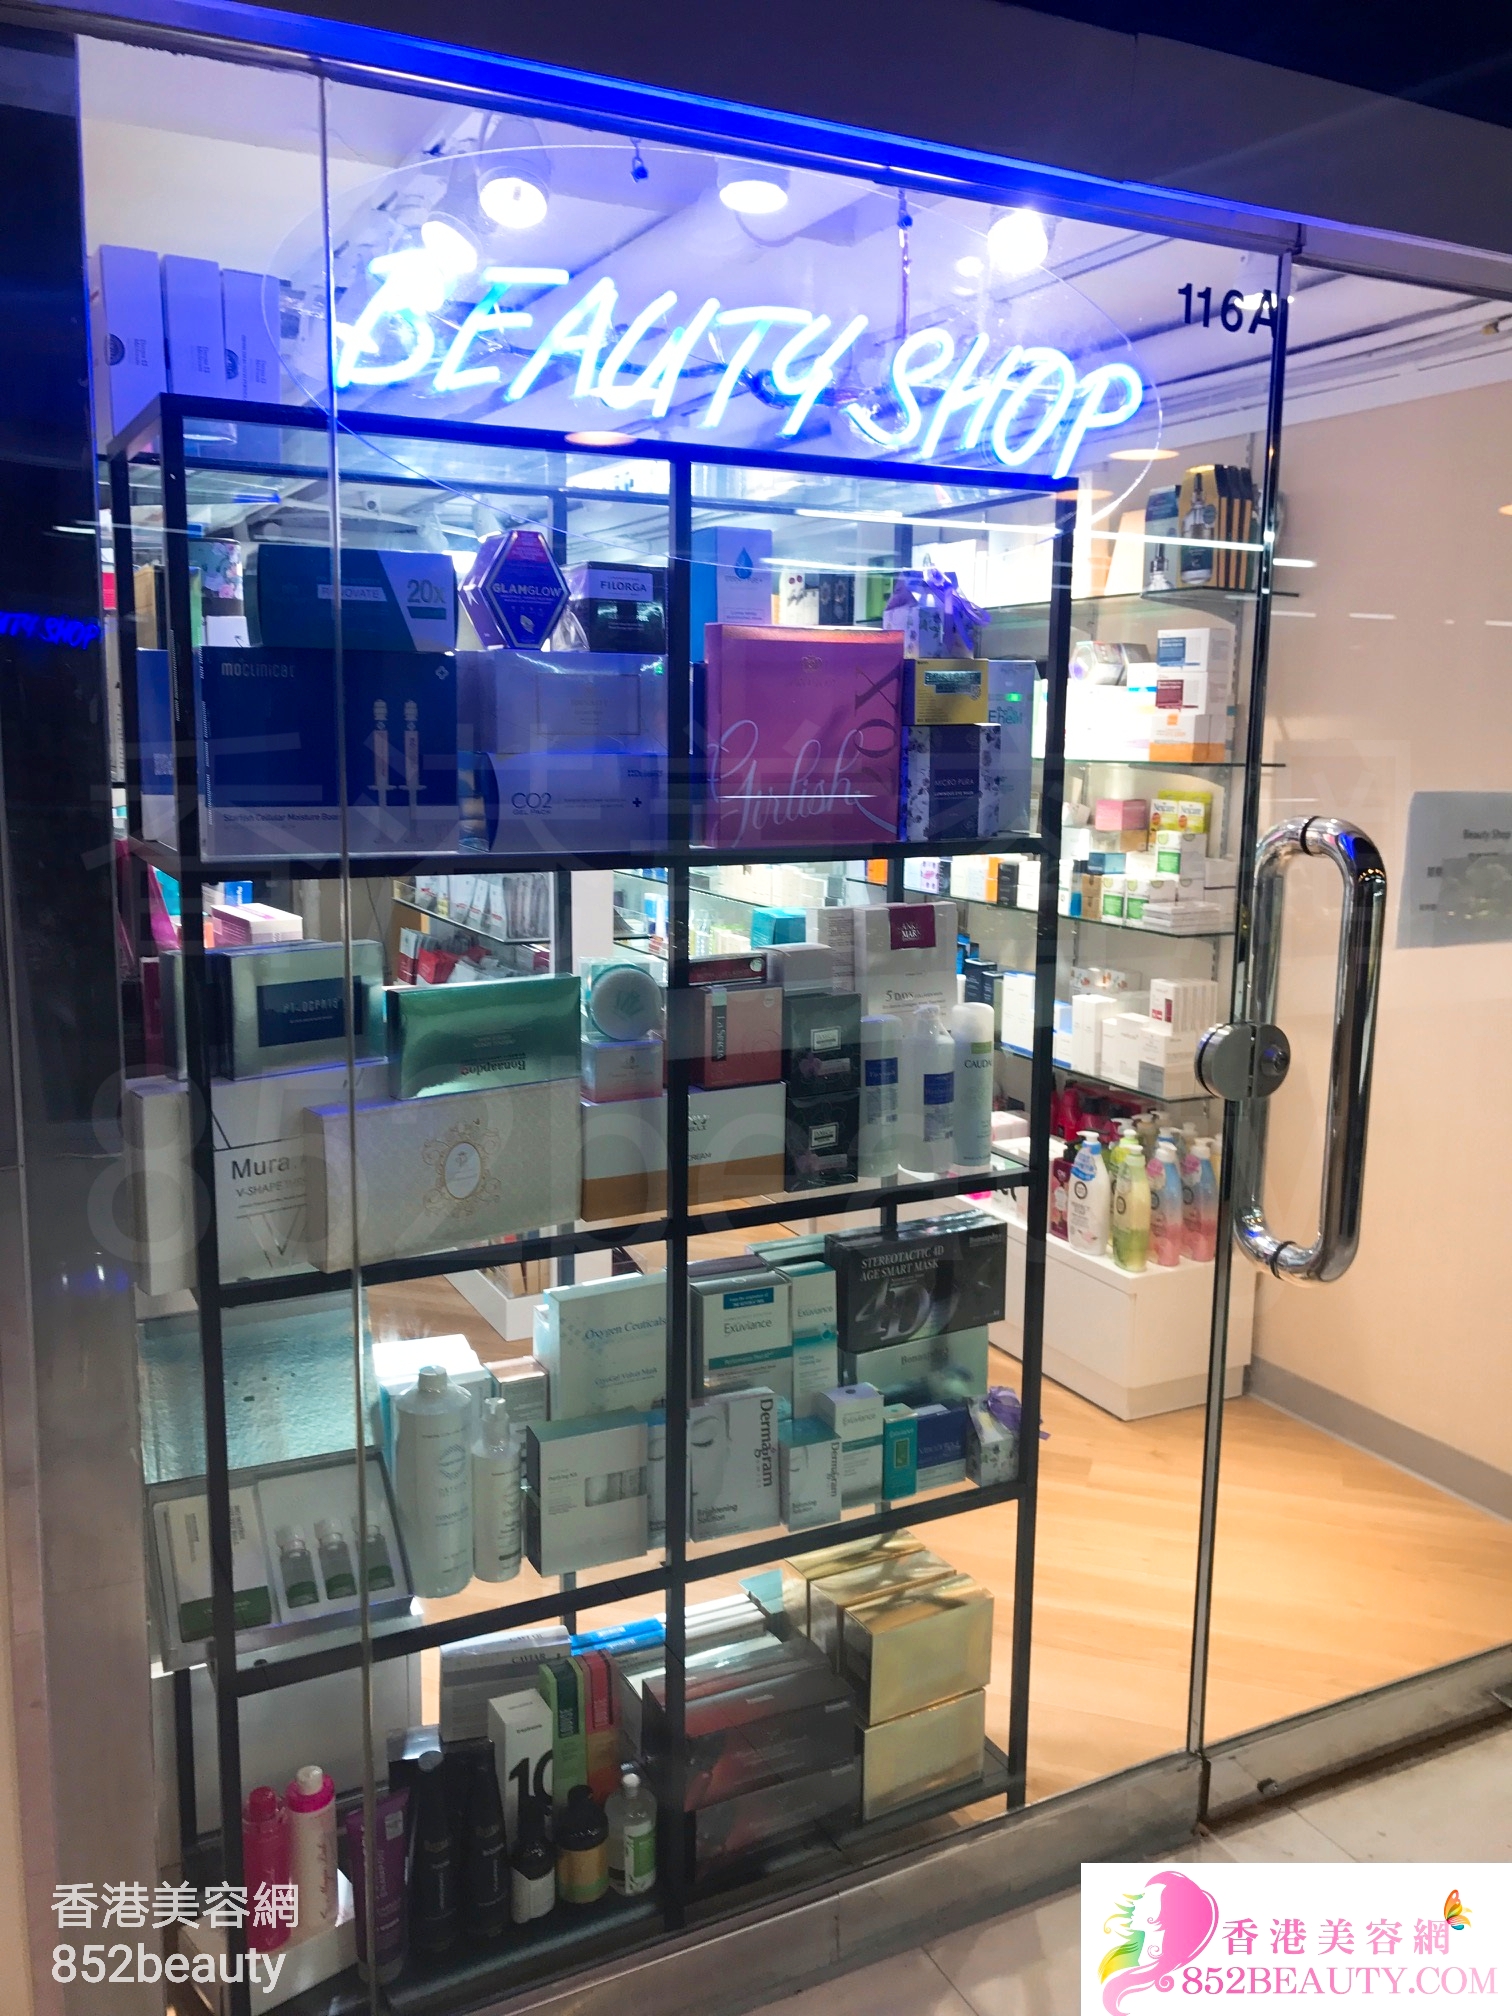 : Beauty Shop